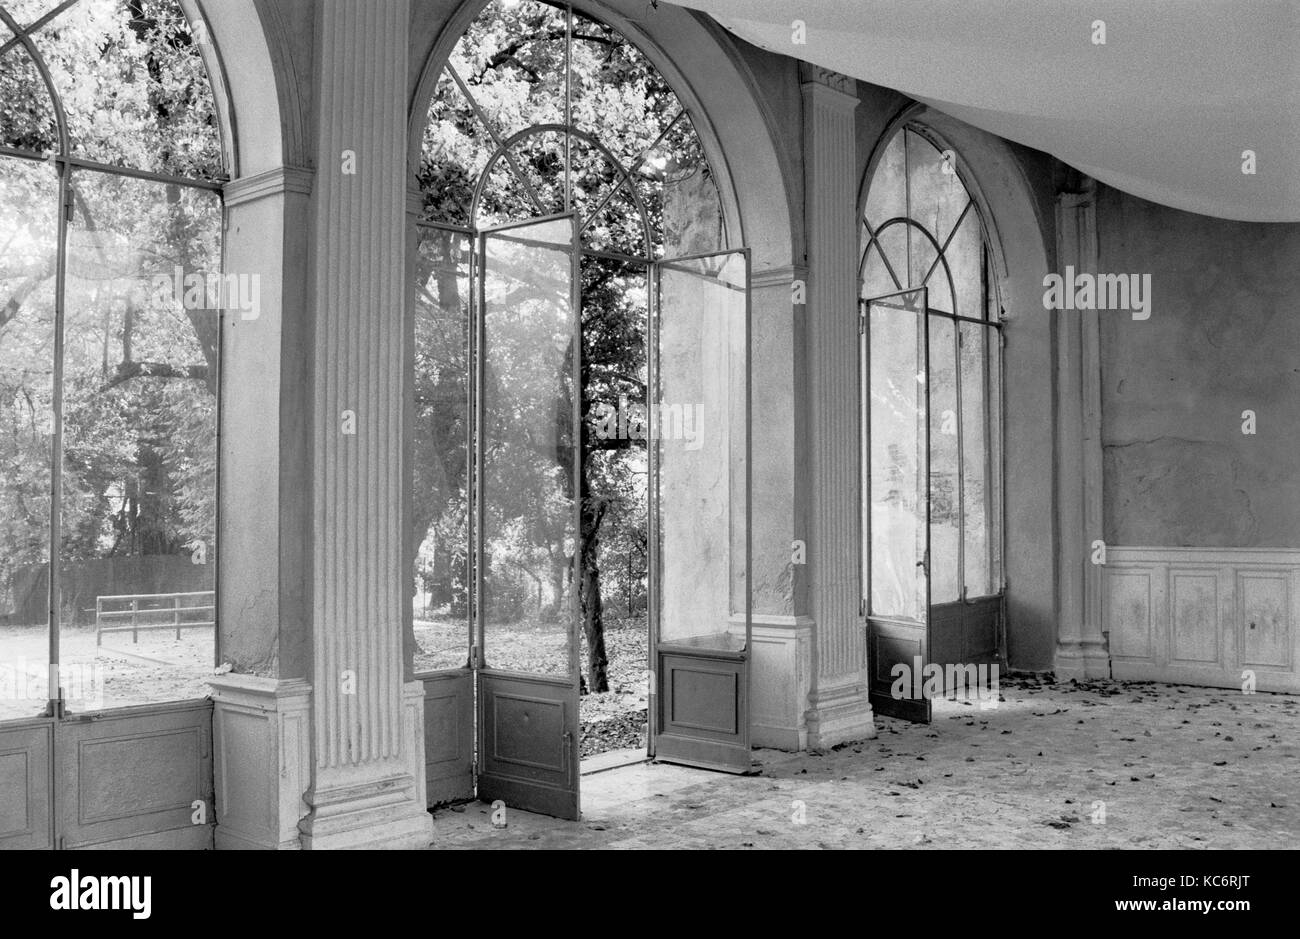 Große Fenster, ZIMMER IN EINER ITALIENISCHEN VILLA - Stresa, Italien - NOSTALGISCHE ZEIT - Klassische romantische Architektur - SILBER FILM © Frédéric BEAUMONT Stockfoto